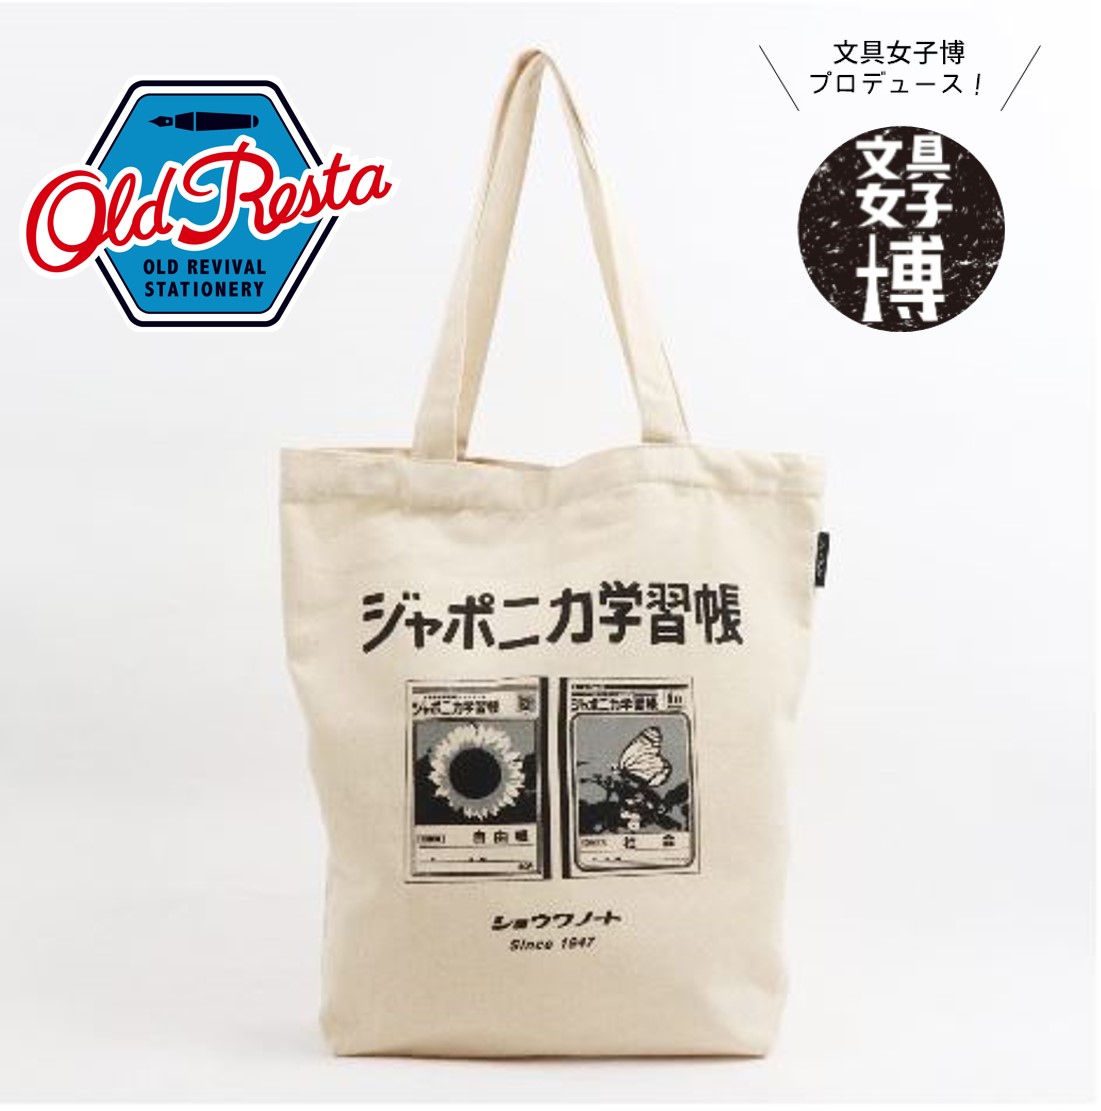 昭和レトロ 文具メーカーなつかしロゴデザインのトートバッグ 雑貨通販 ヴィレッジヴァンガード公式通販サイト